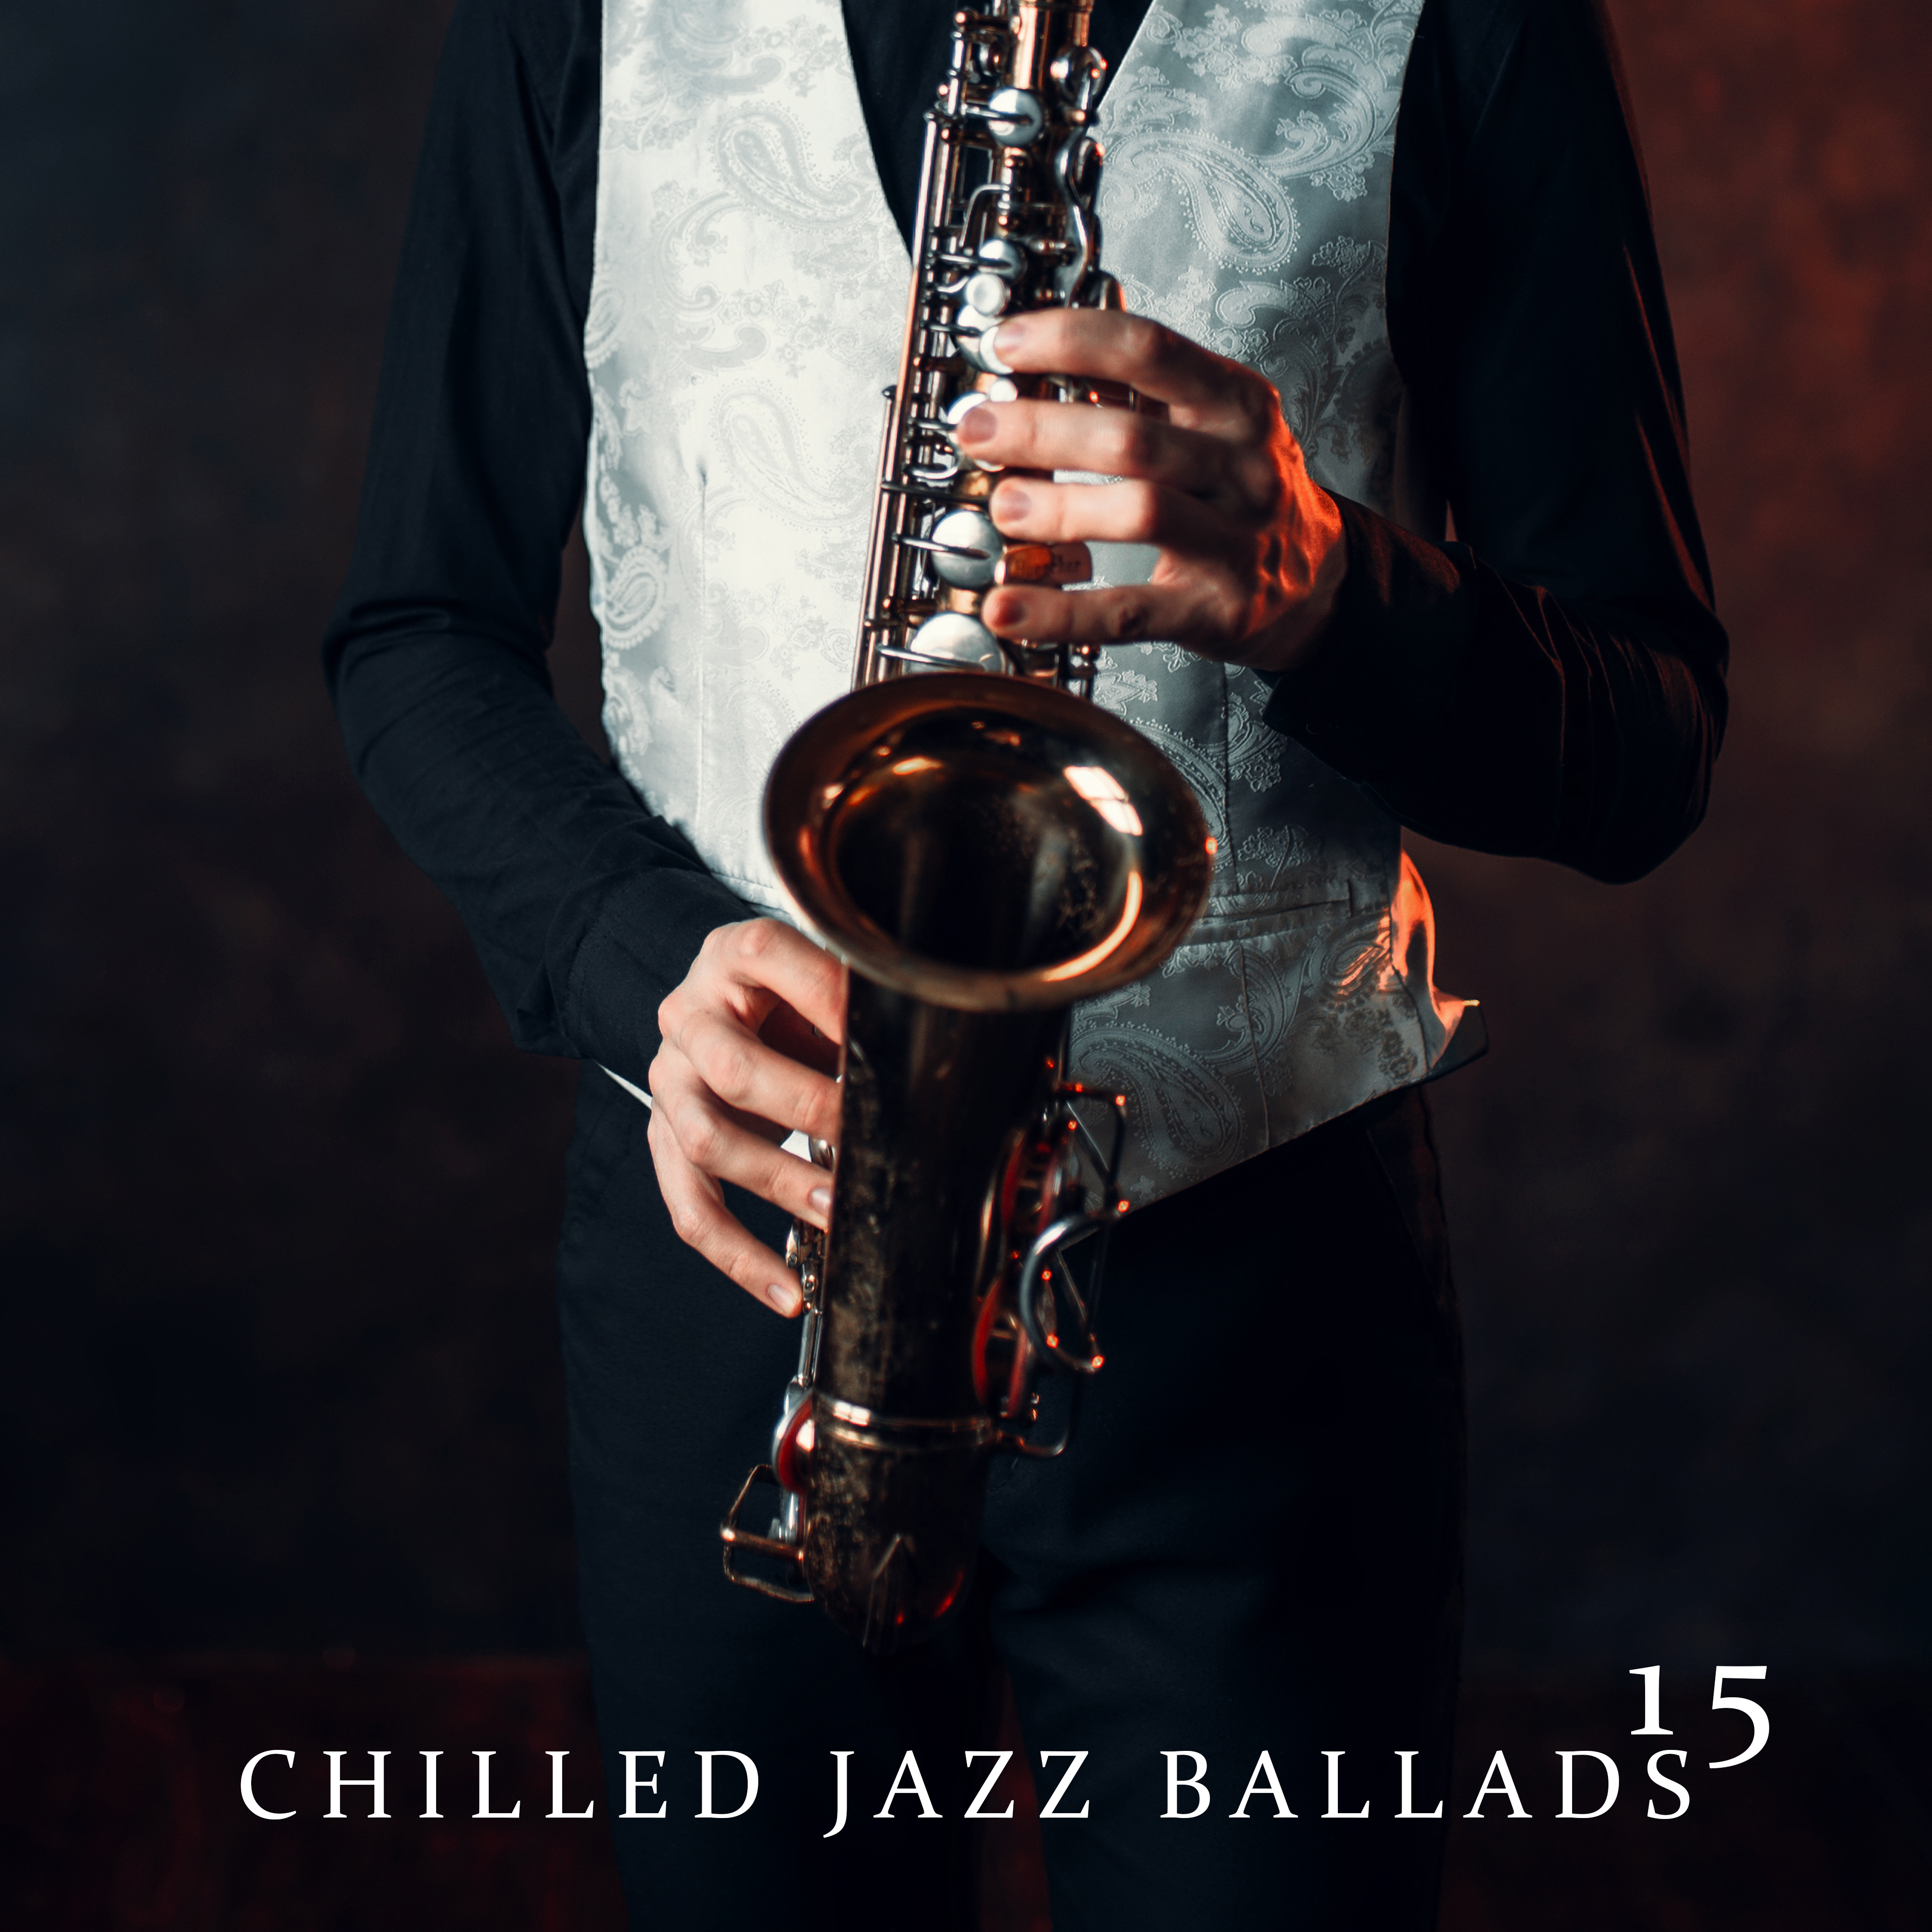 15 Chilled Jazz Ballads